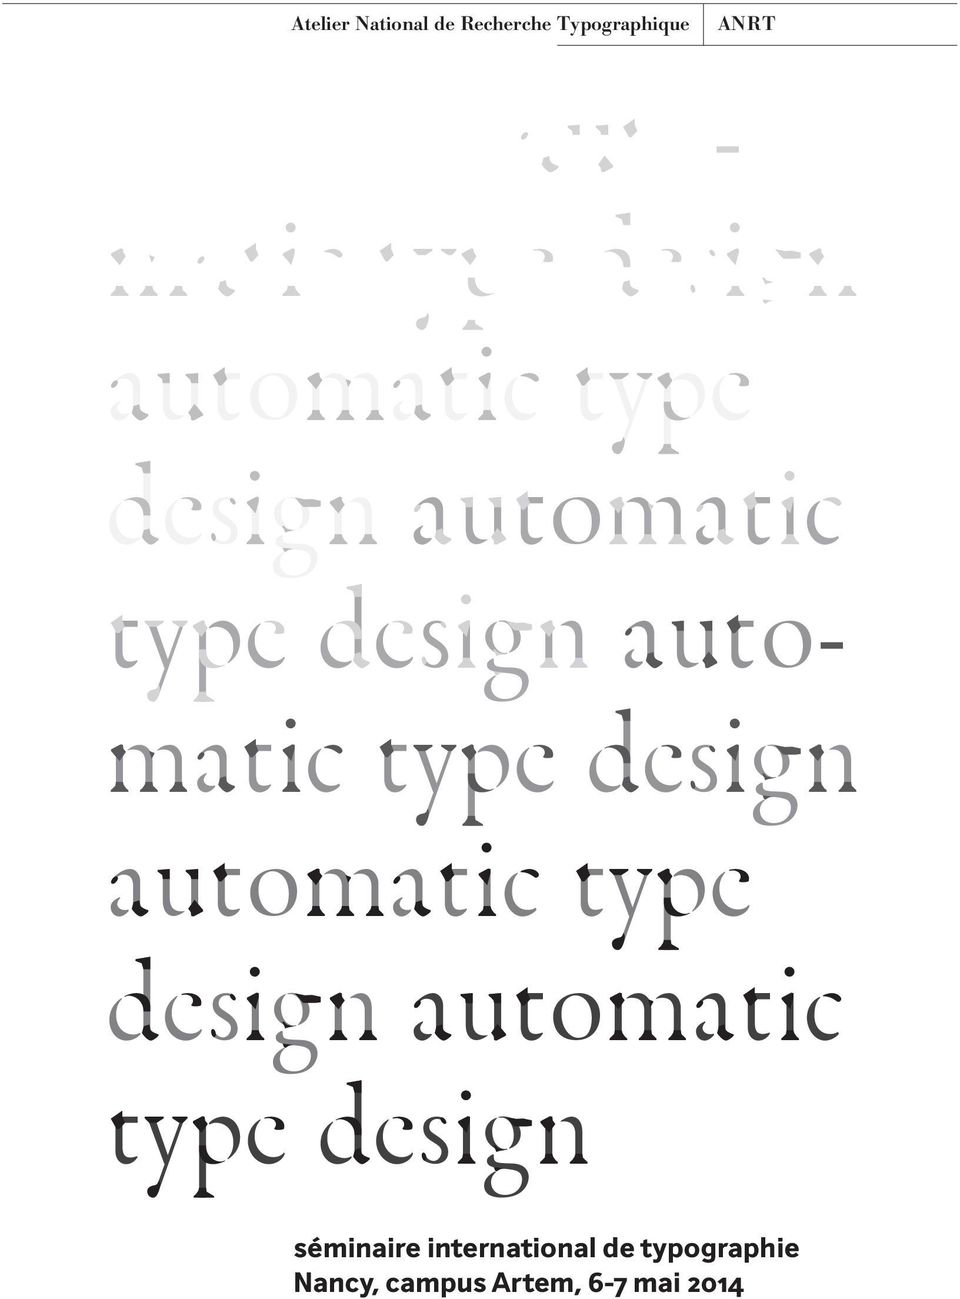 type design automatic type design automatic type design